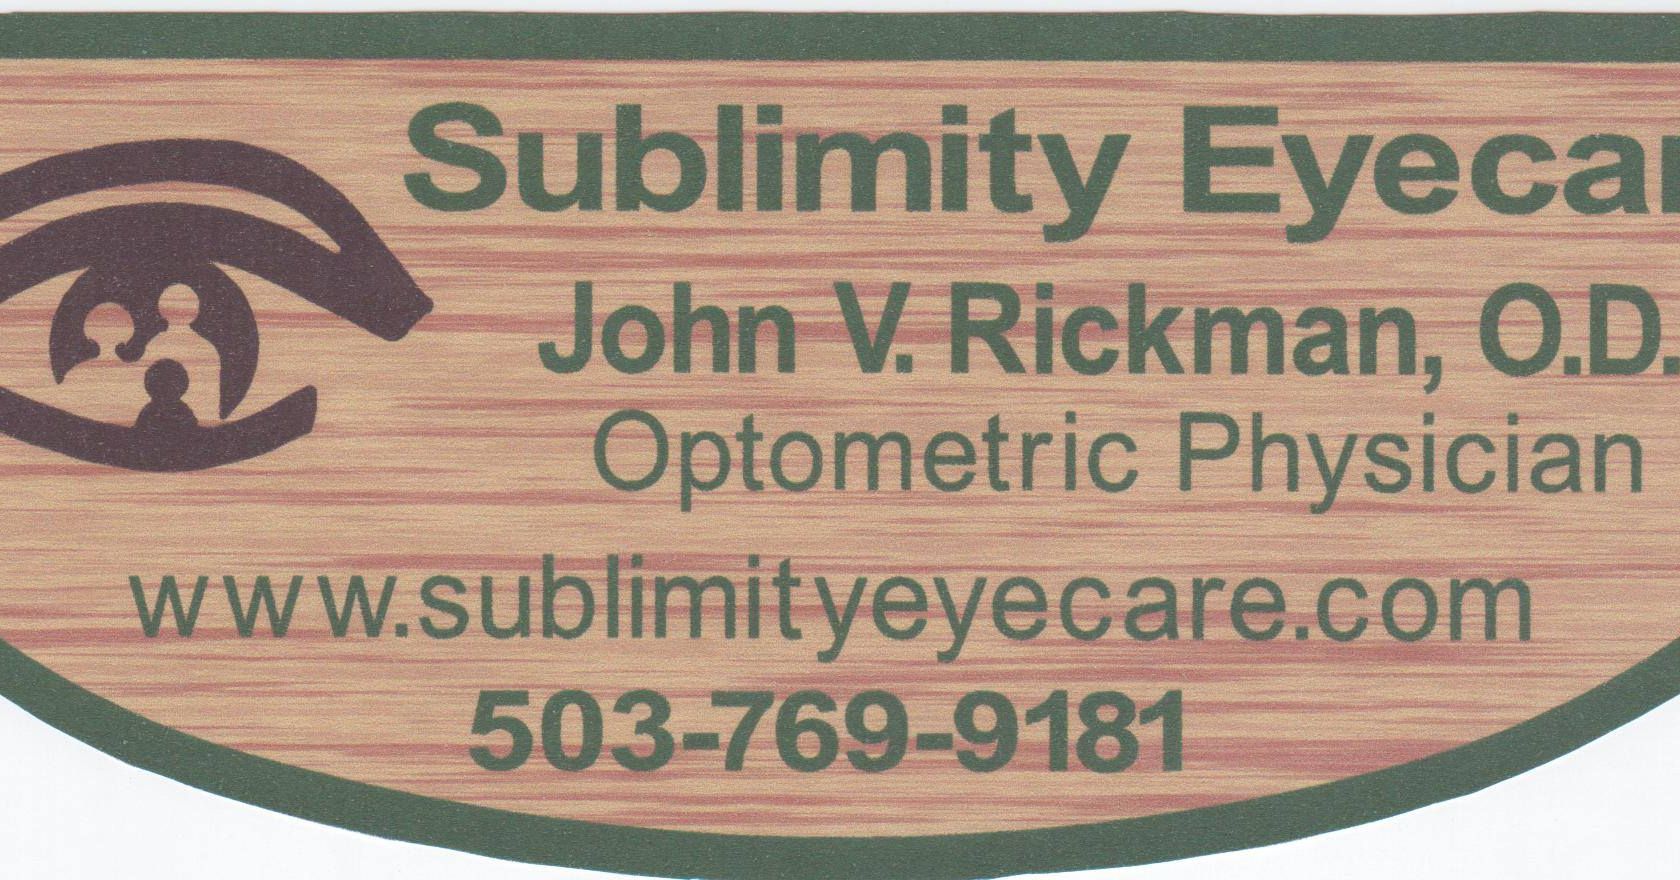 Sublimity Eyecare 103 S Center St, Sublimity Oregon 97385